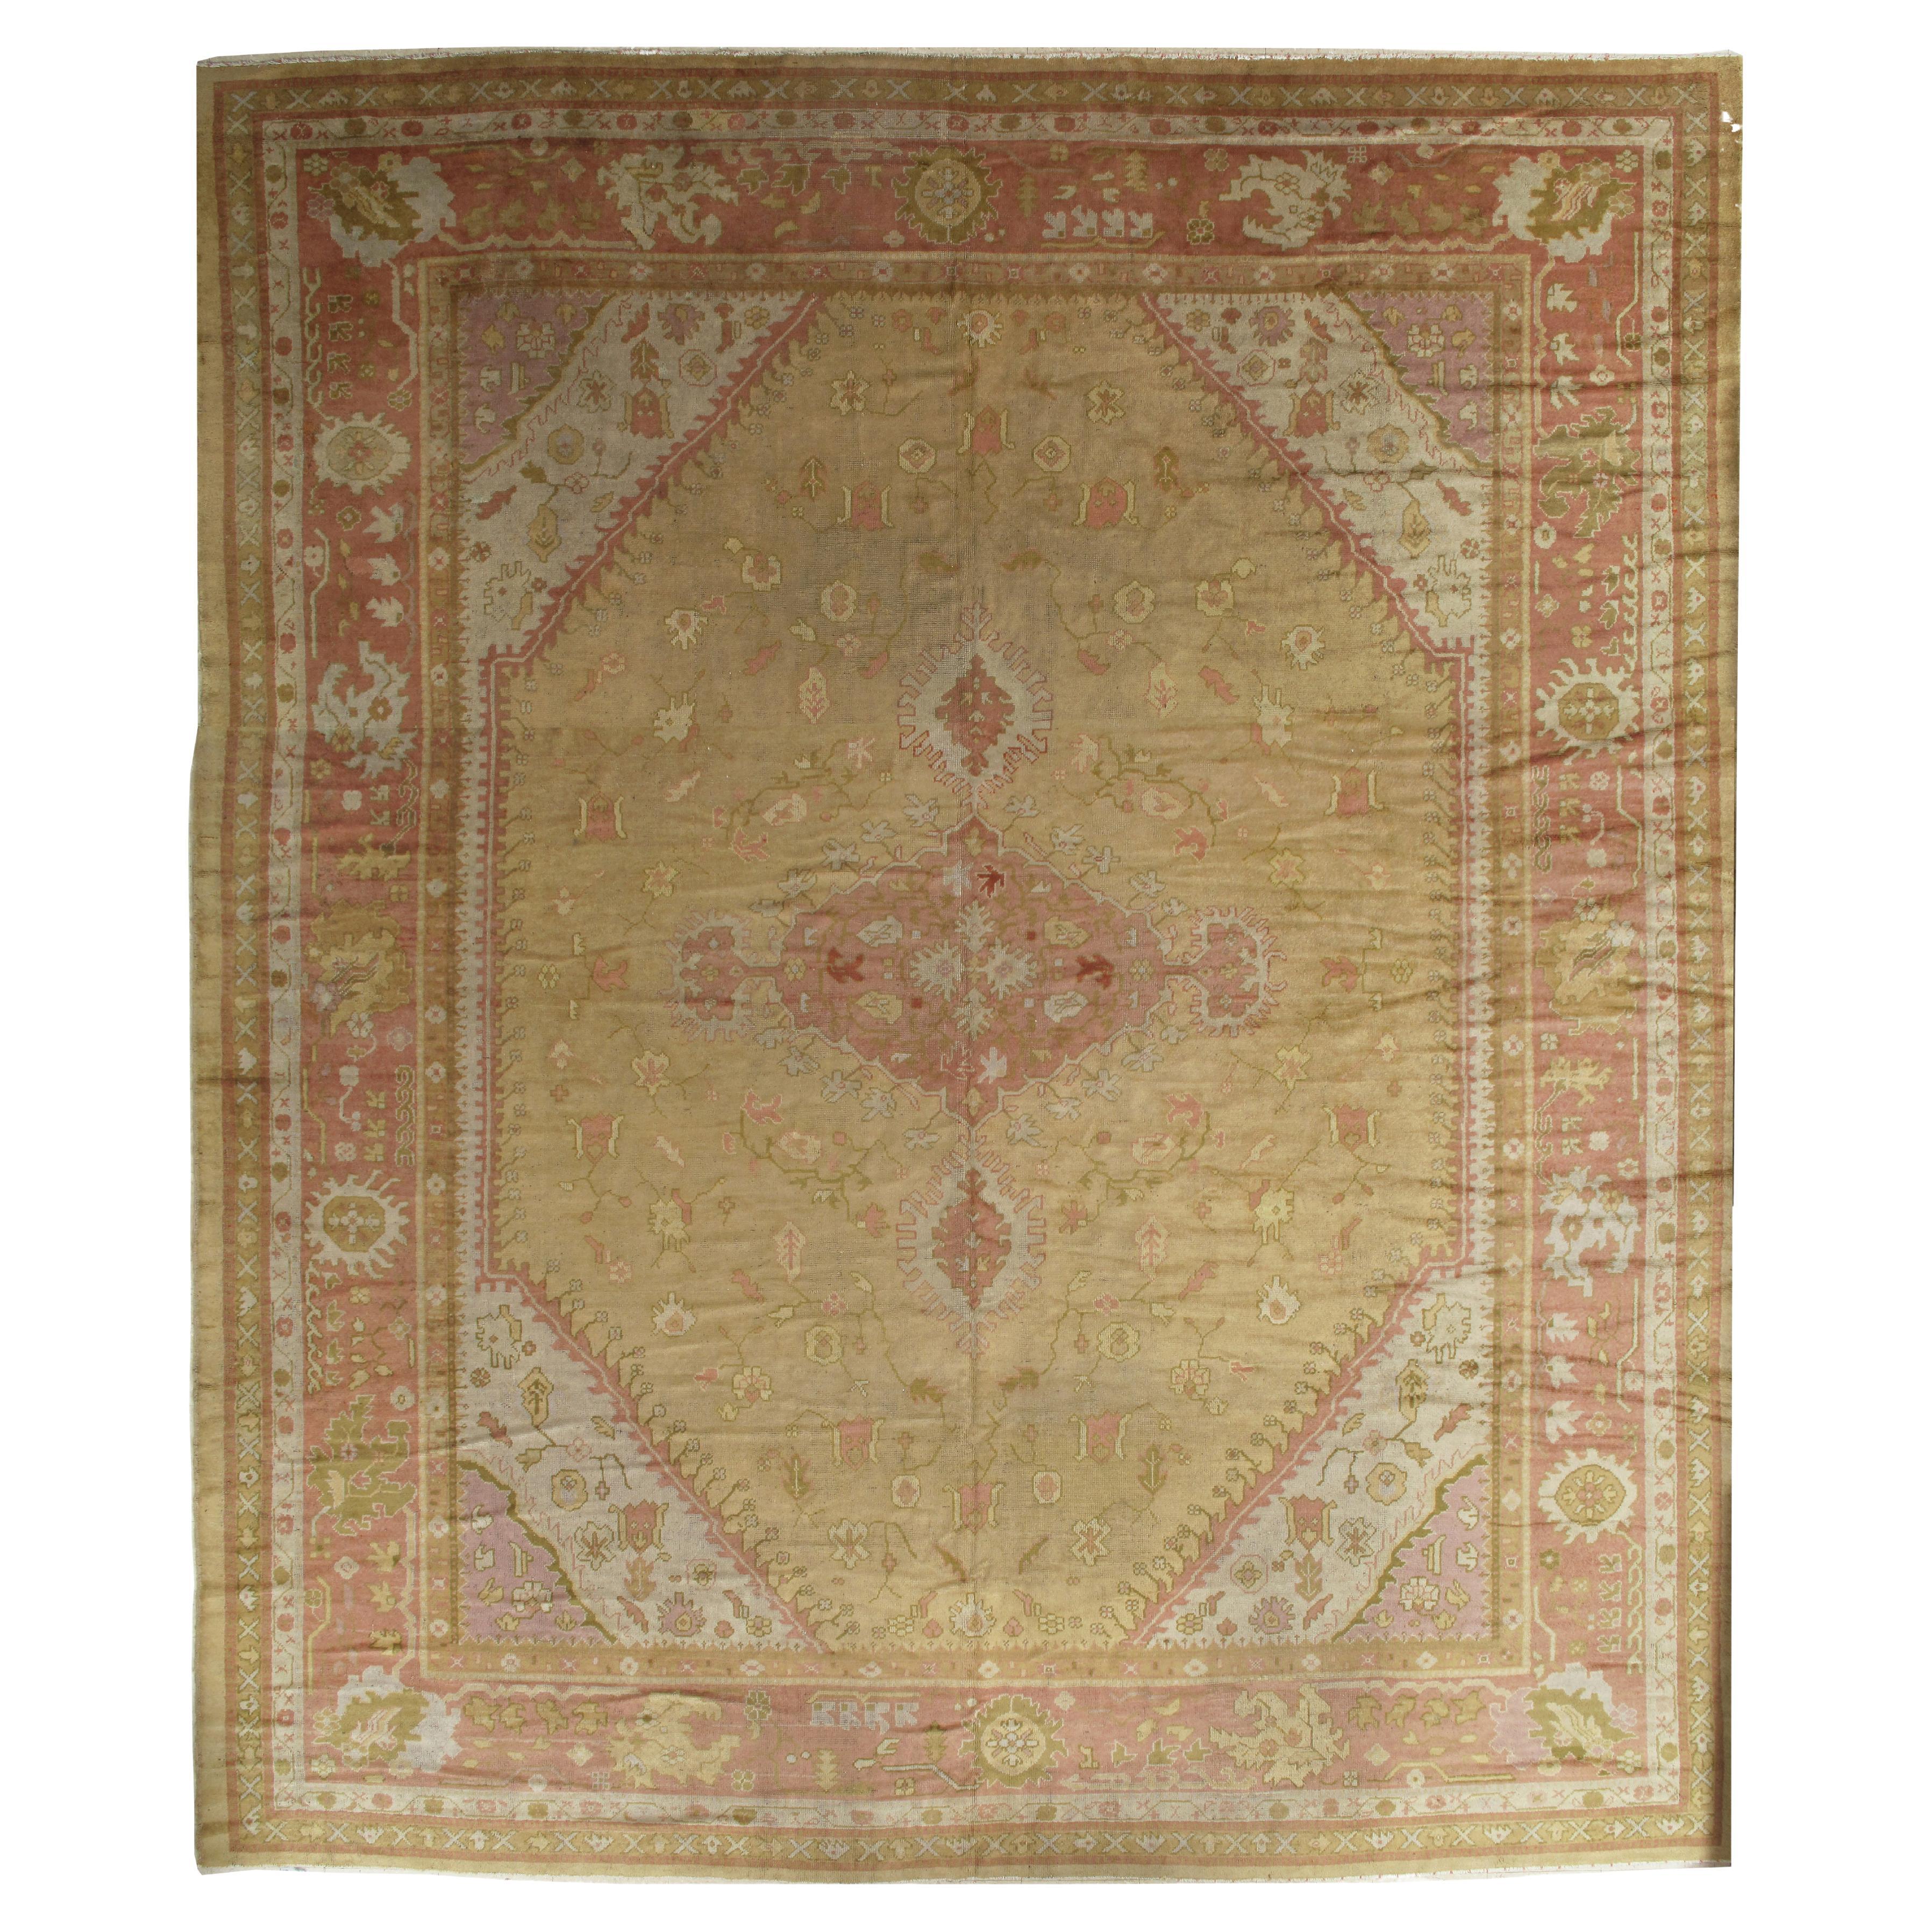 Antiker türkischer Oushak-Teppich, handgefertigter orientalischer Teppich, Gold, Koralle, Grün, Taupe